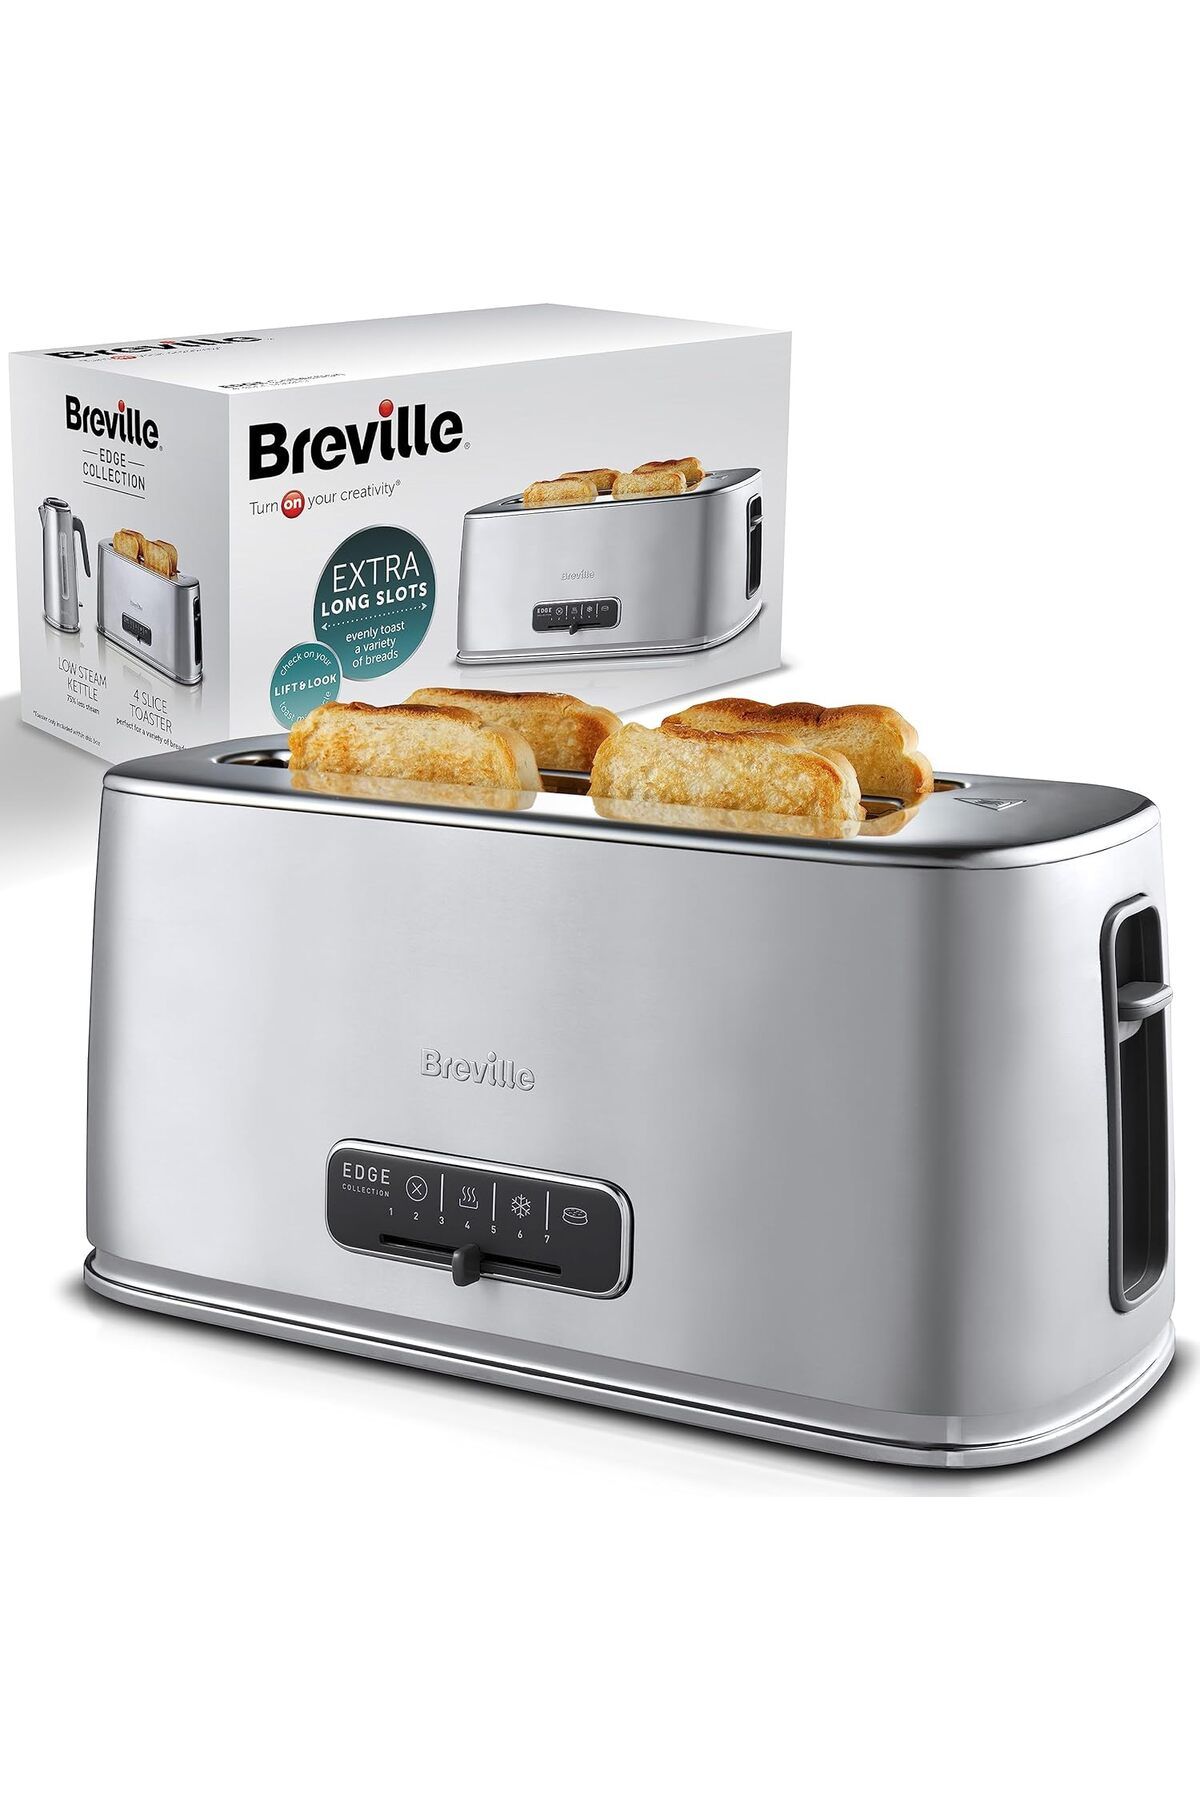 Breville Edge Silver Ekstra Uzun Yuvalı ve Yüksek Kaldırma özellikli Ekmek Kızartma Makinesi